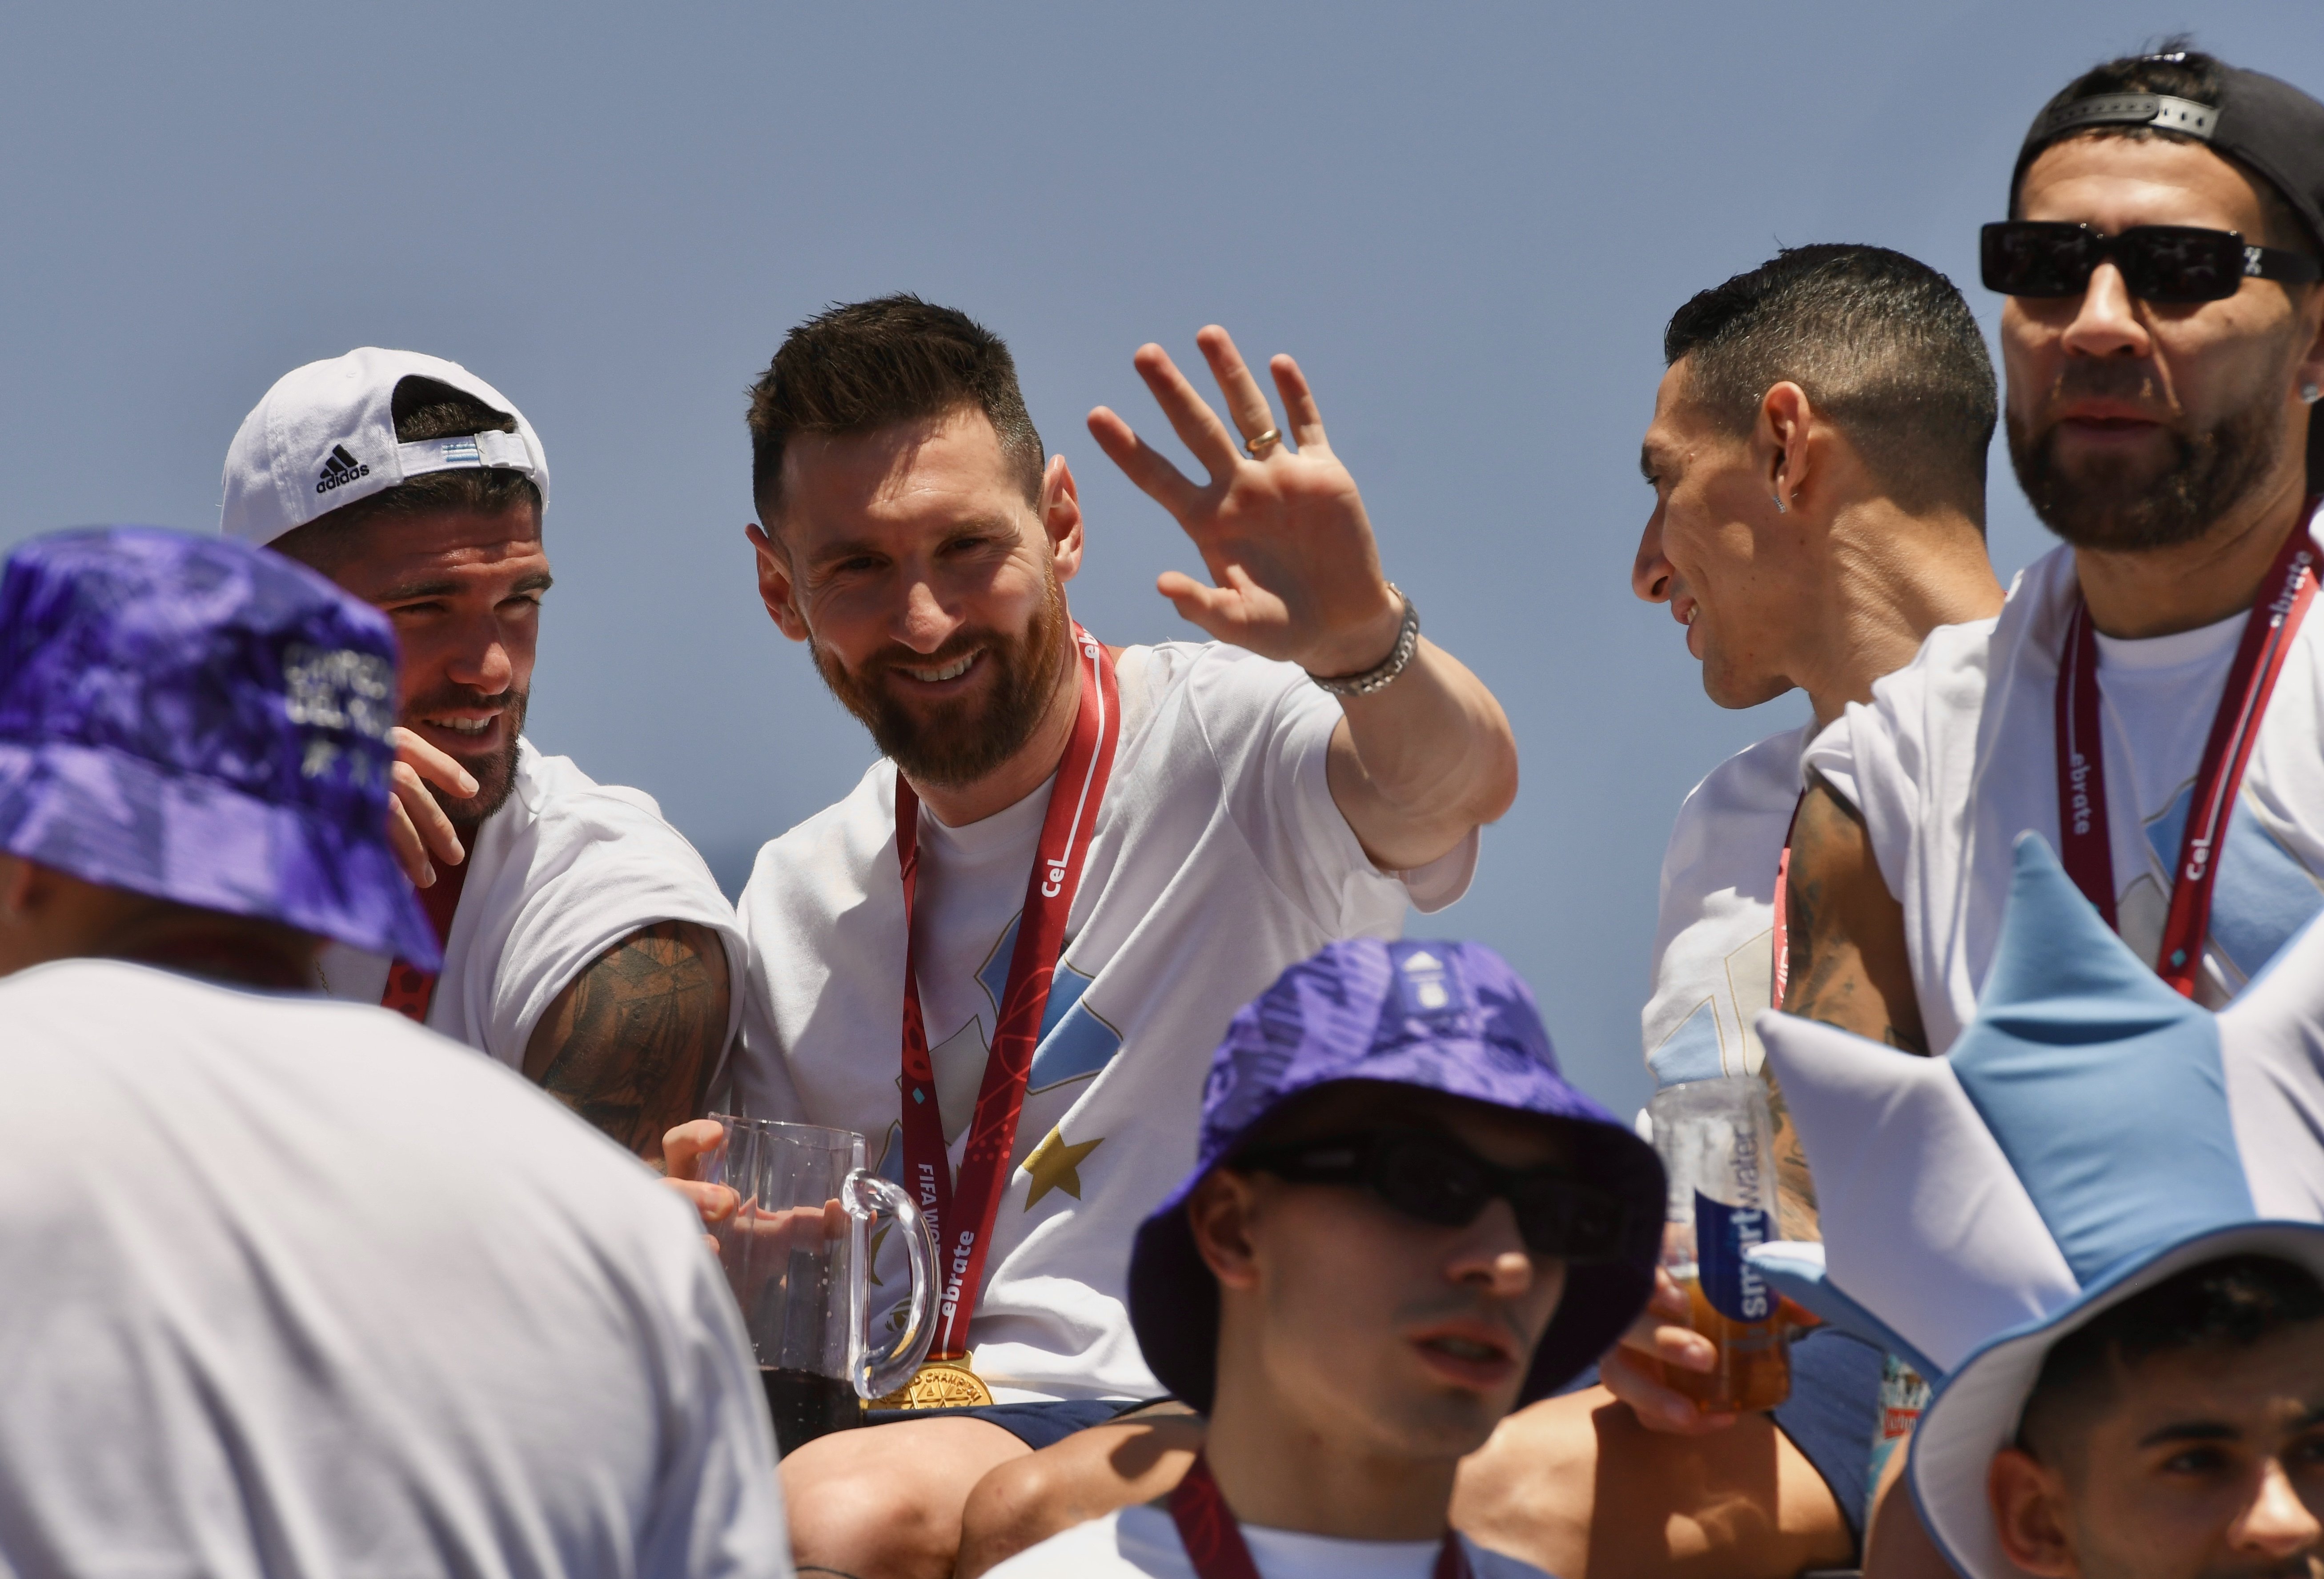 El gesto más humano de Leo Messi, agranda su leyenda: 2 vídeos lo demuestran